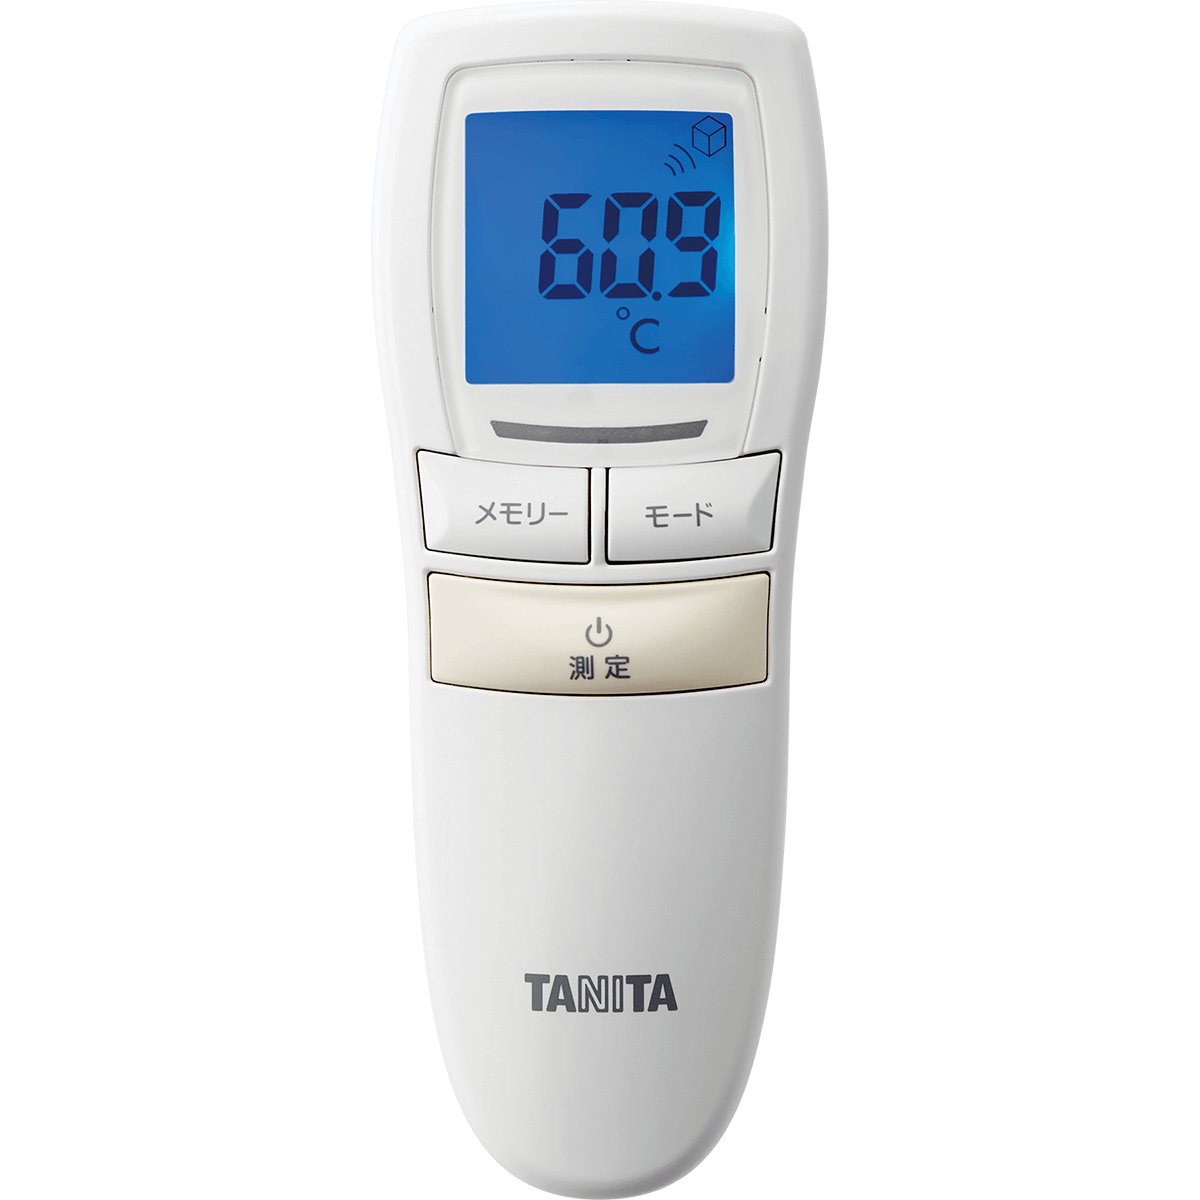 タニタ非接触体温計 BT-54Xタイプ(BT-543) | タニタオンラインショップ